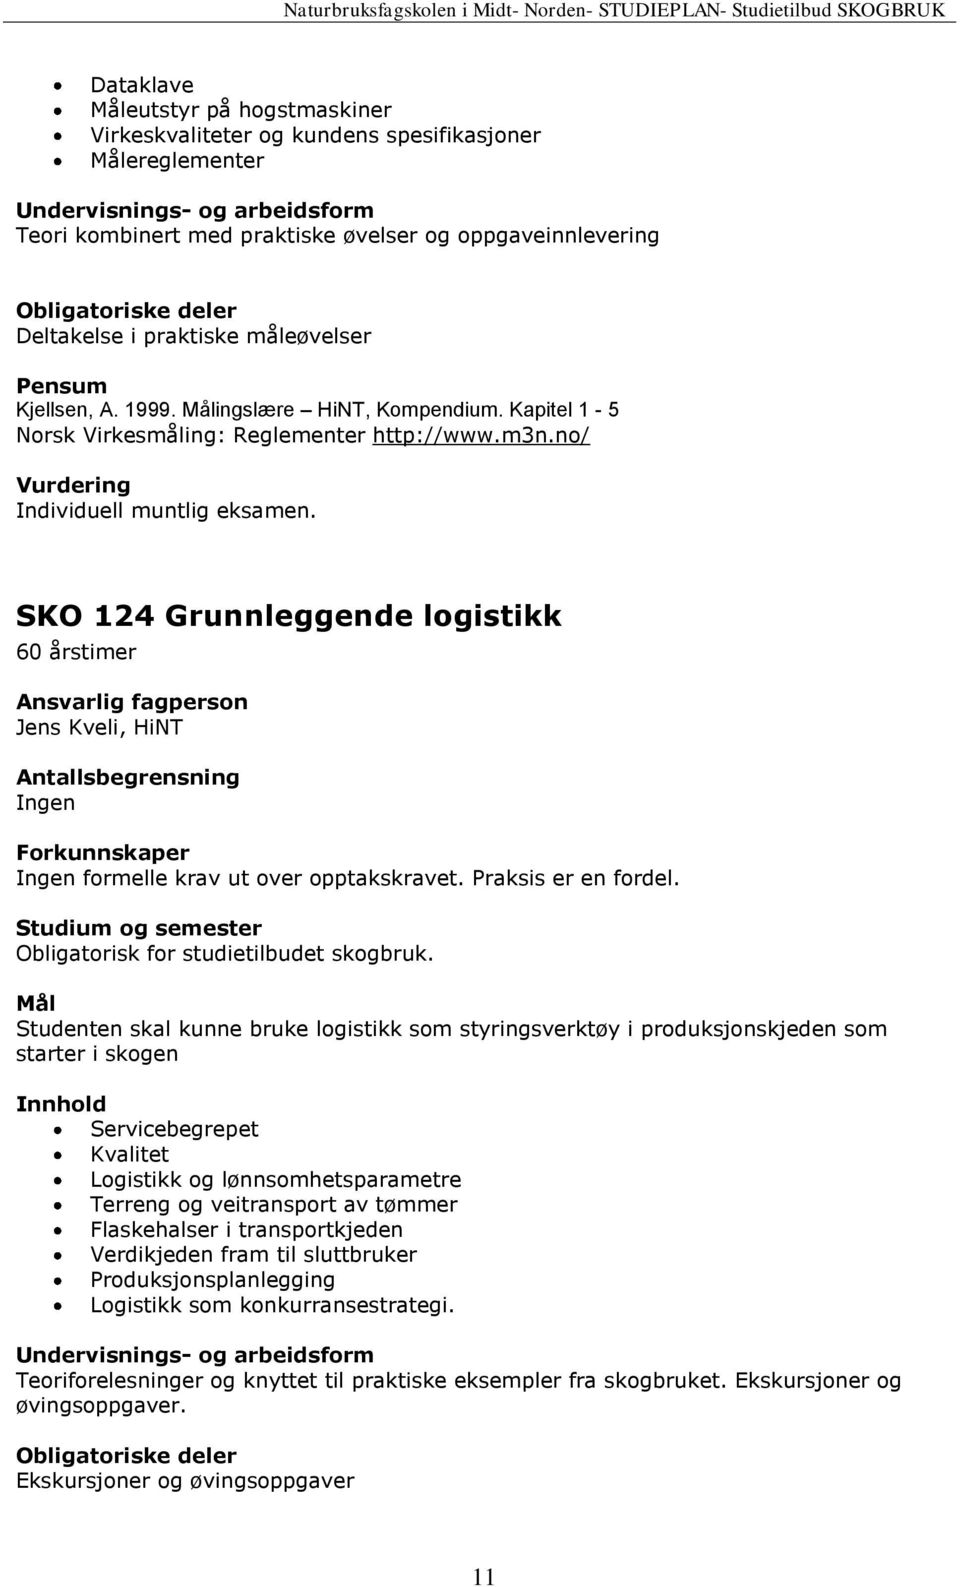 SKO 124 Grunnleggende logistikk 60 årstimer Jens Kveli, HiNT formelle krav ut over opptakskravet. Praksis er en fordel.